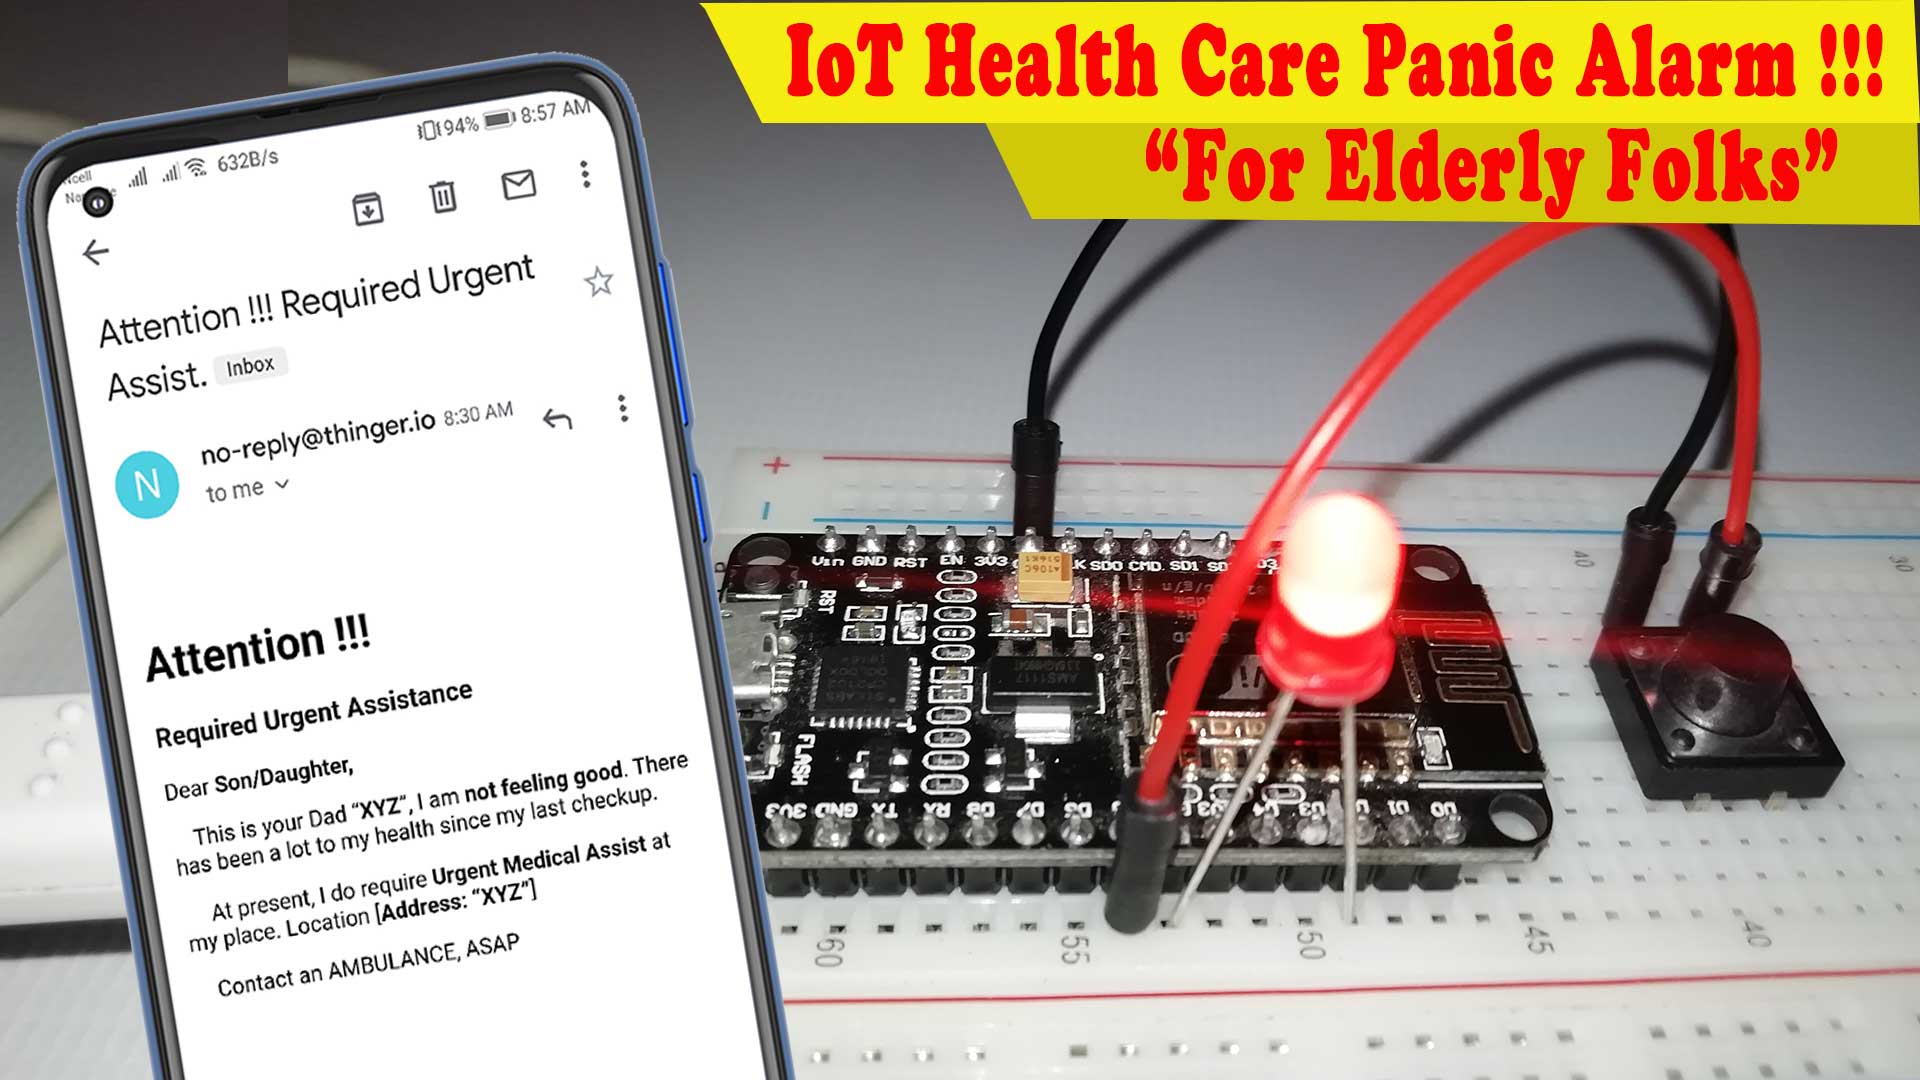 ESP8266 based IoT Health Care Panic Alarm for Elderly Folks